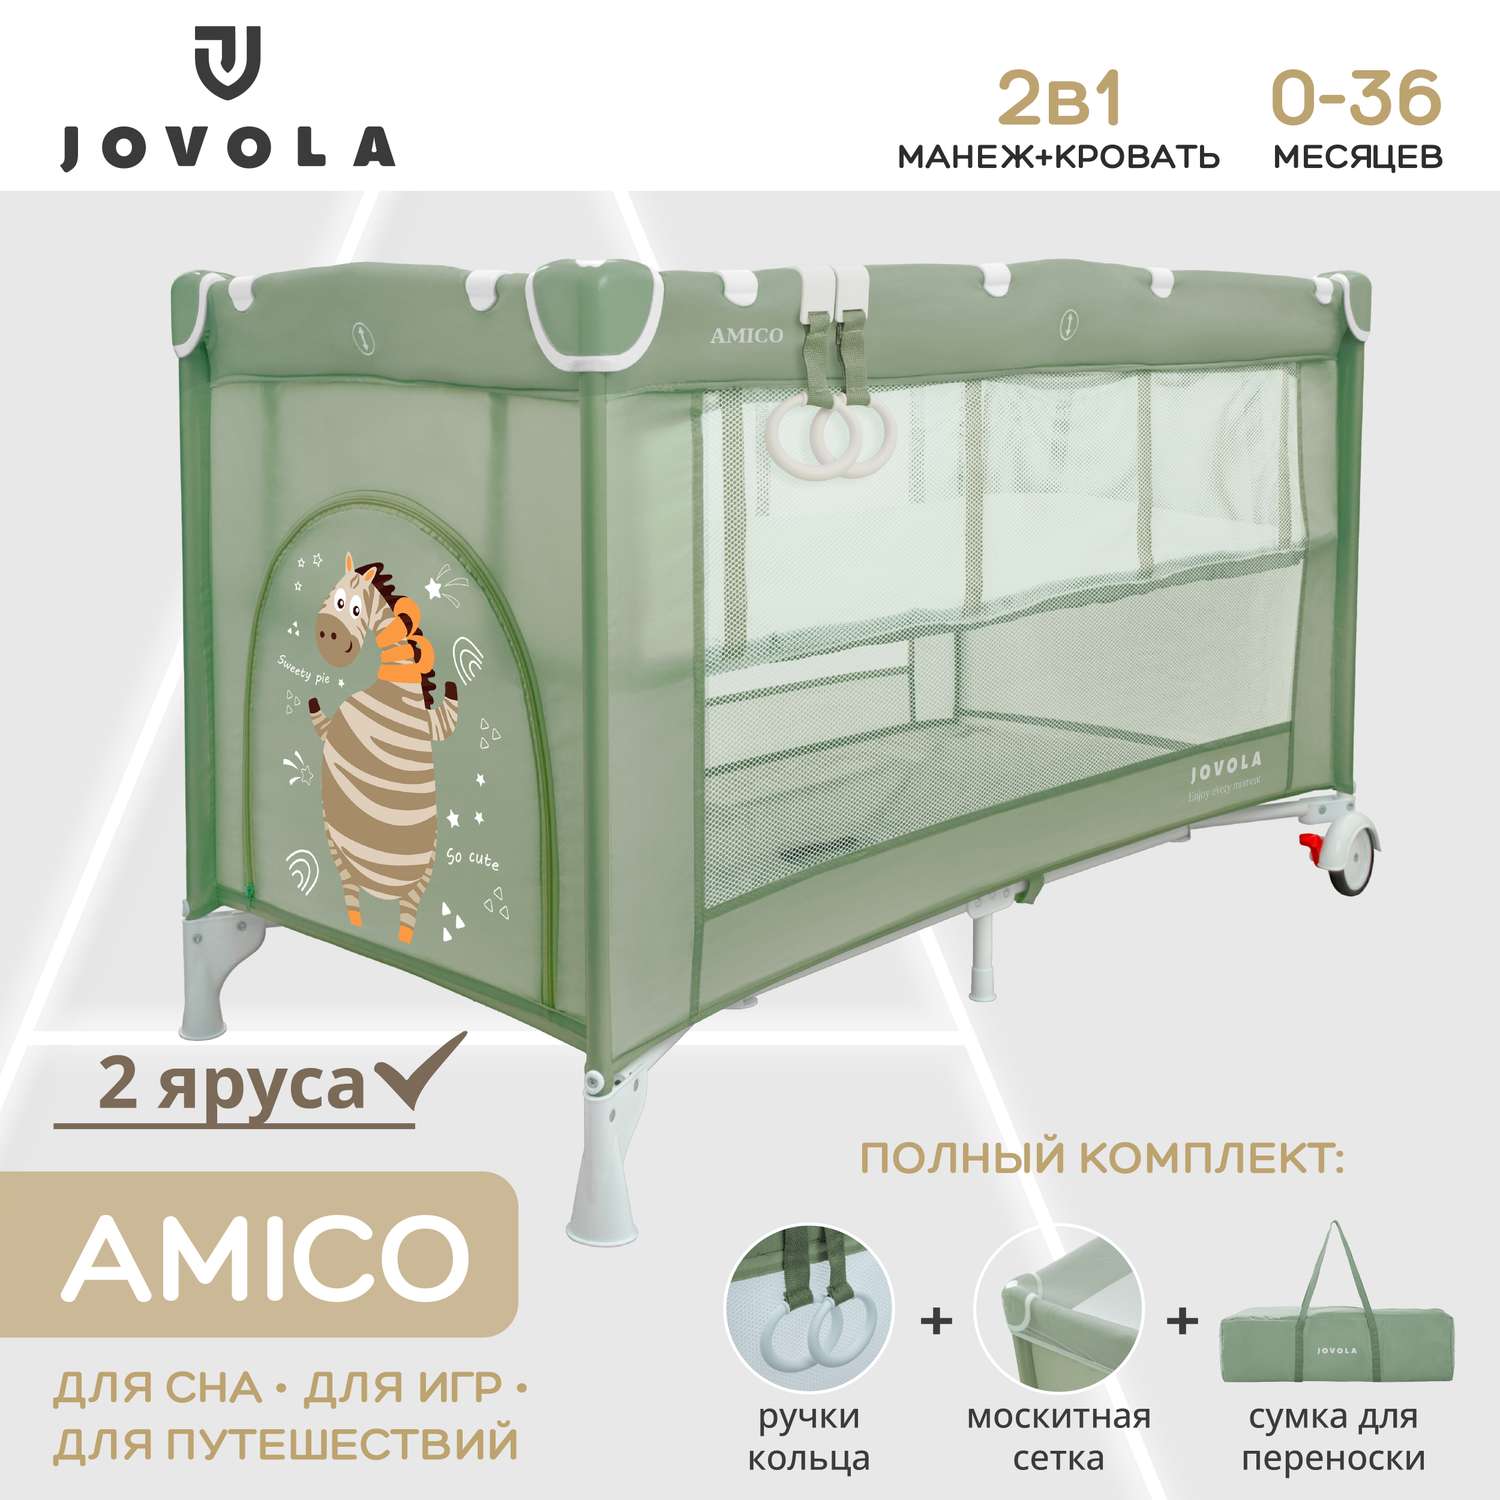 Манеж-кровать JOVOLA AMICO 2 уровня москитная сетка 2 кольца зеленый 4657792380429 - фото 1